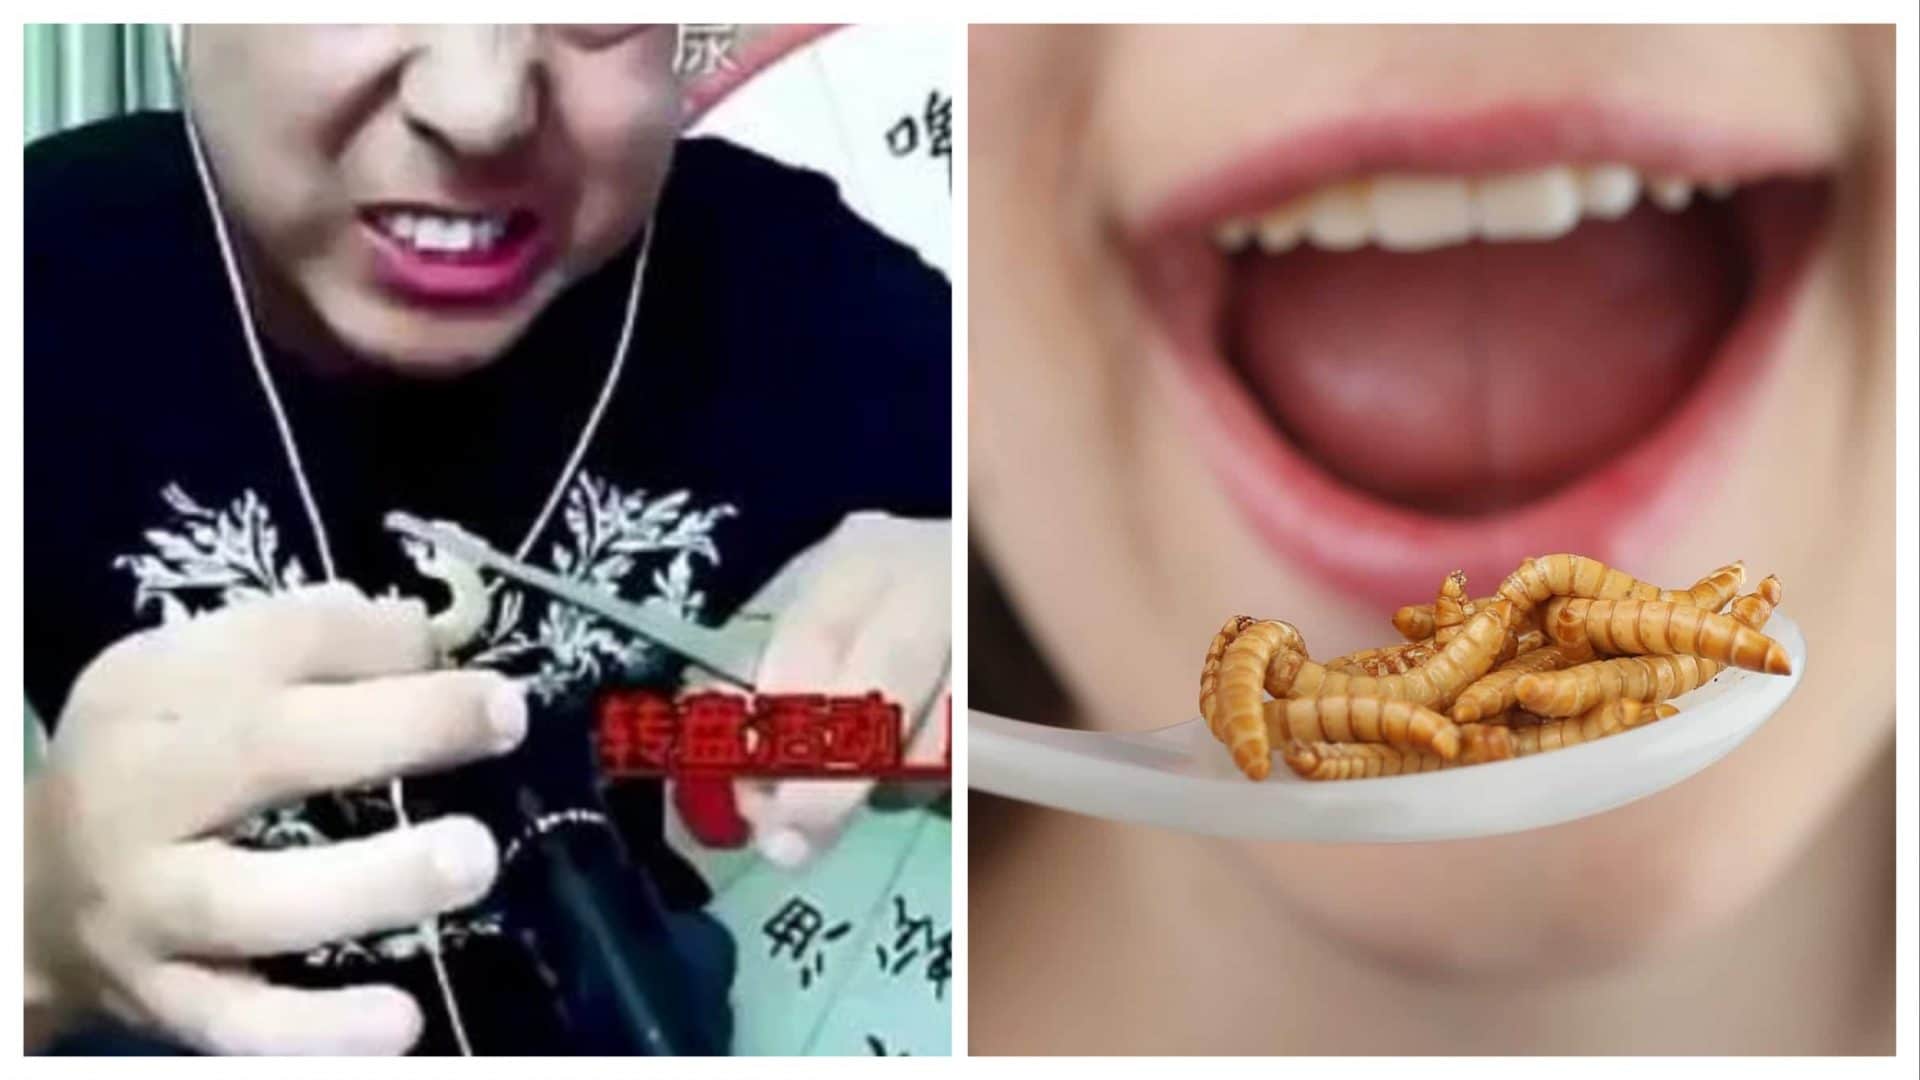 Blogger mangia insetti velenosi in diretta su Youtube, si sente male e dopo qualche minuto muore